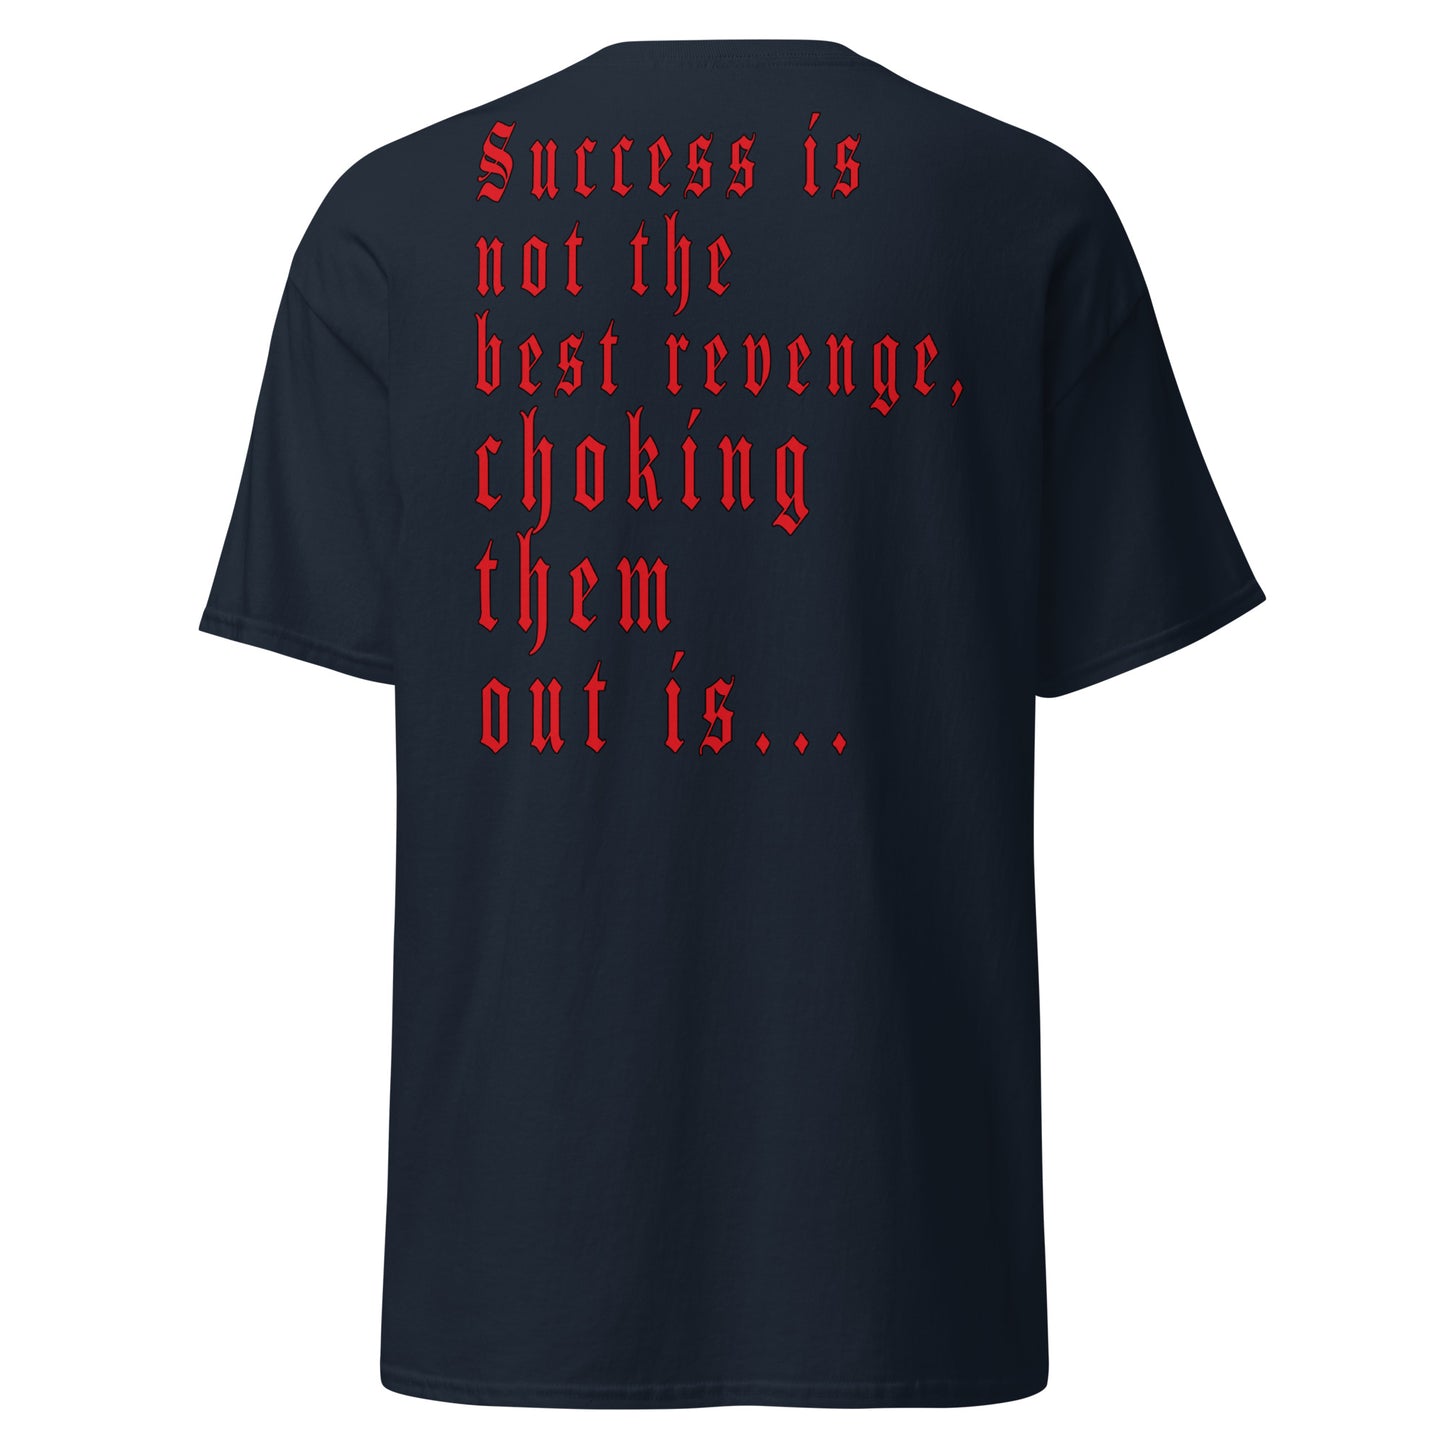 Success Shirt